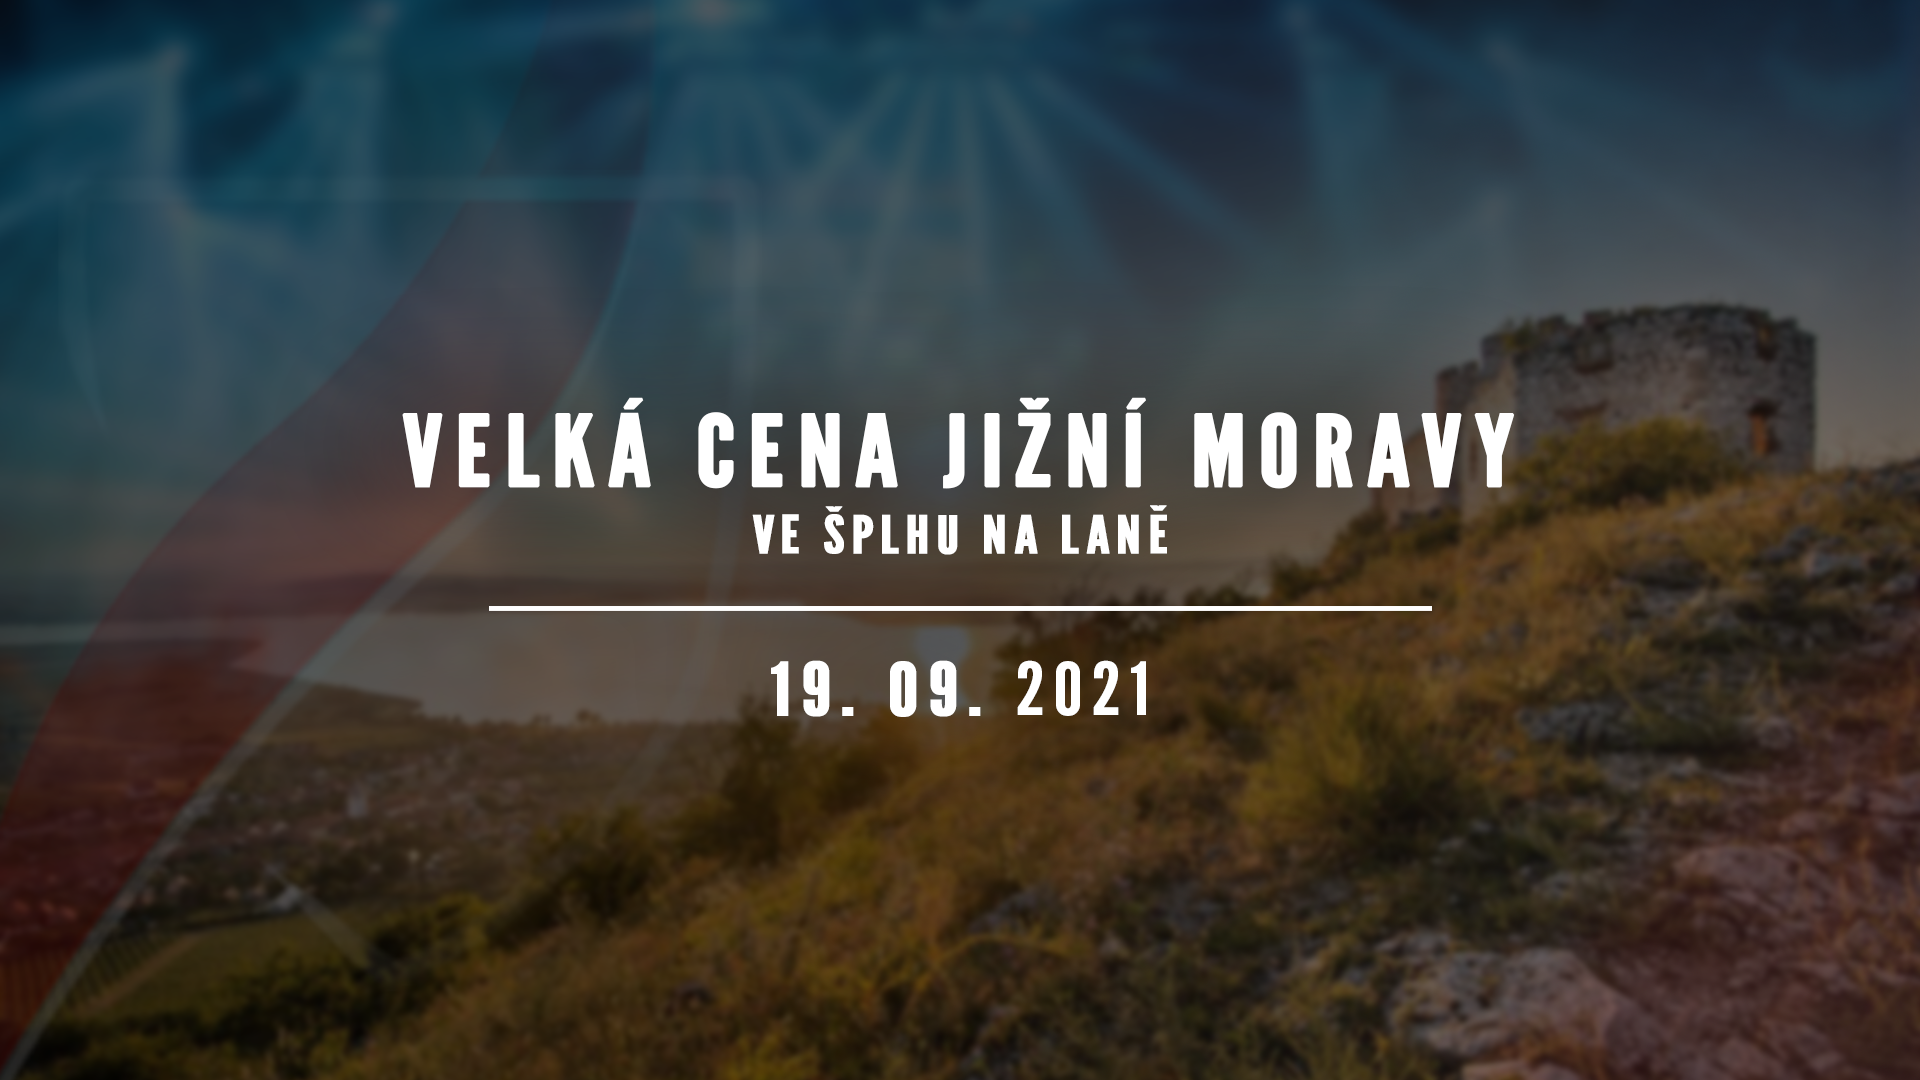 Velká cena Jižní Moravy 2021 - plakát